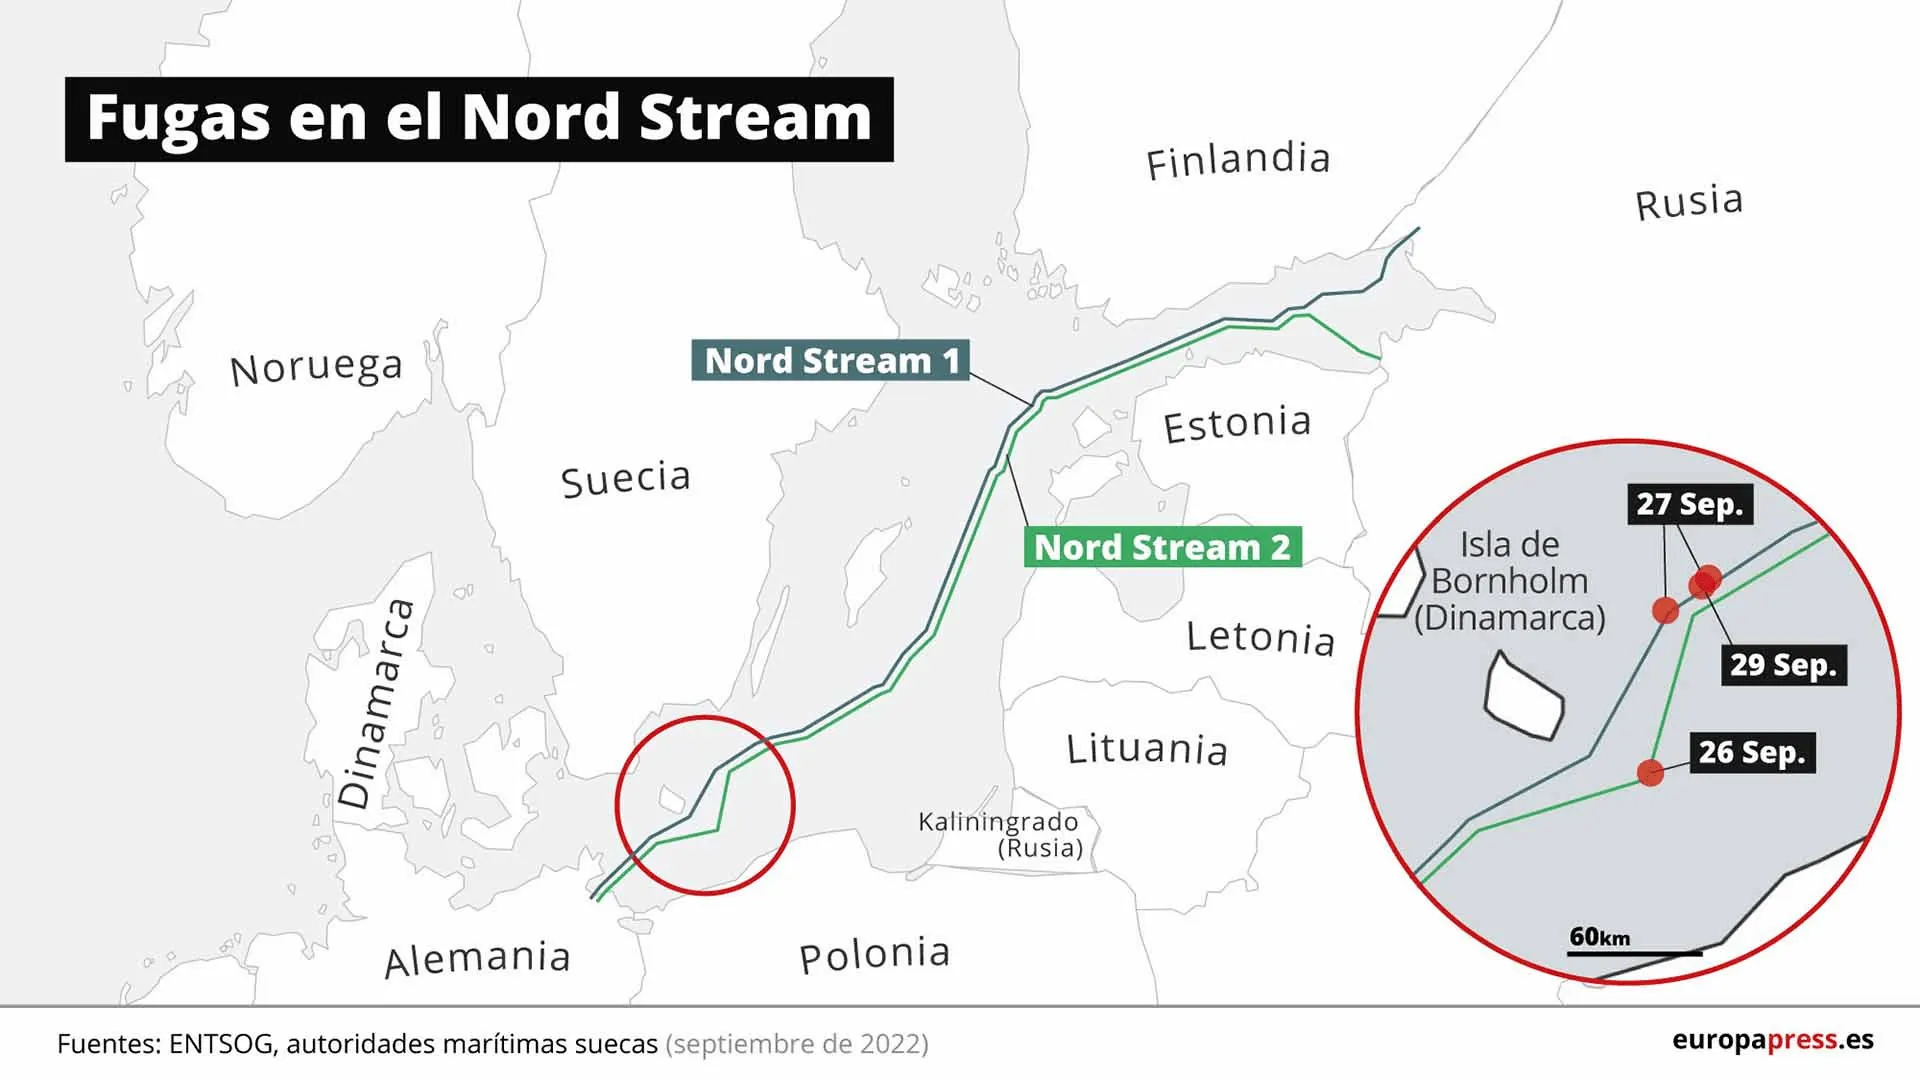 Fugas en el Nord Stream en el Mar Báltico